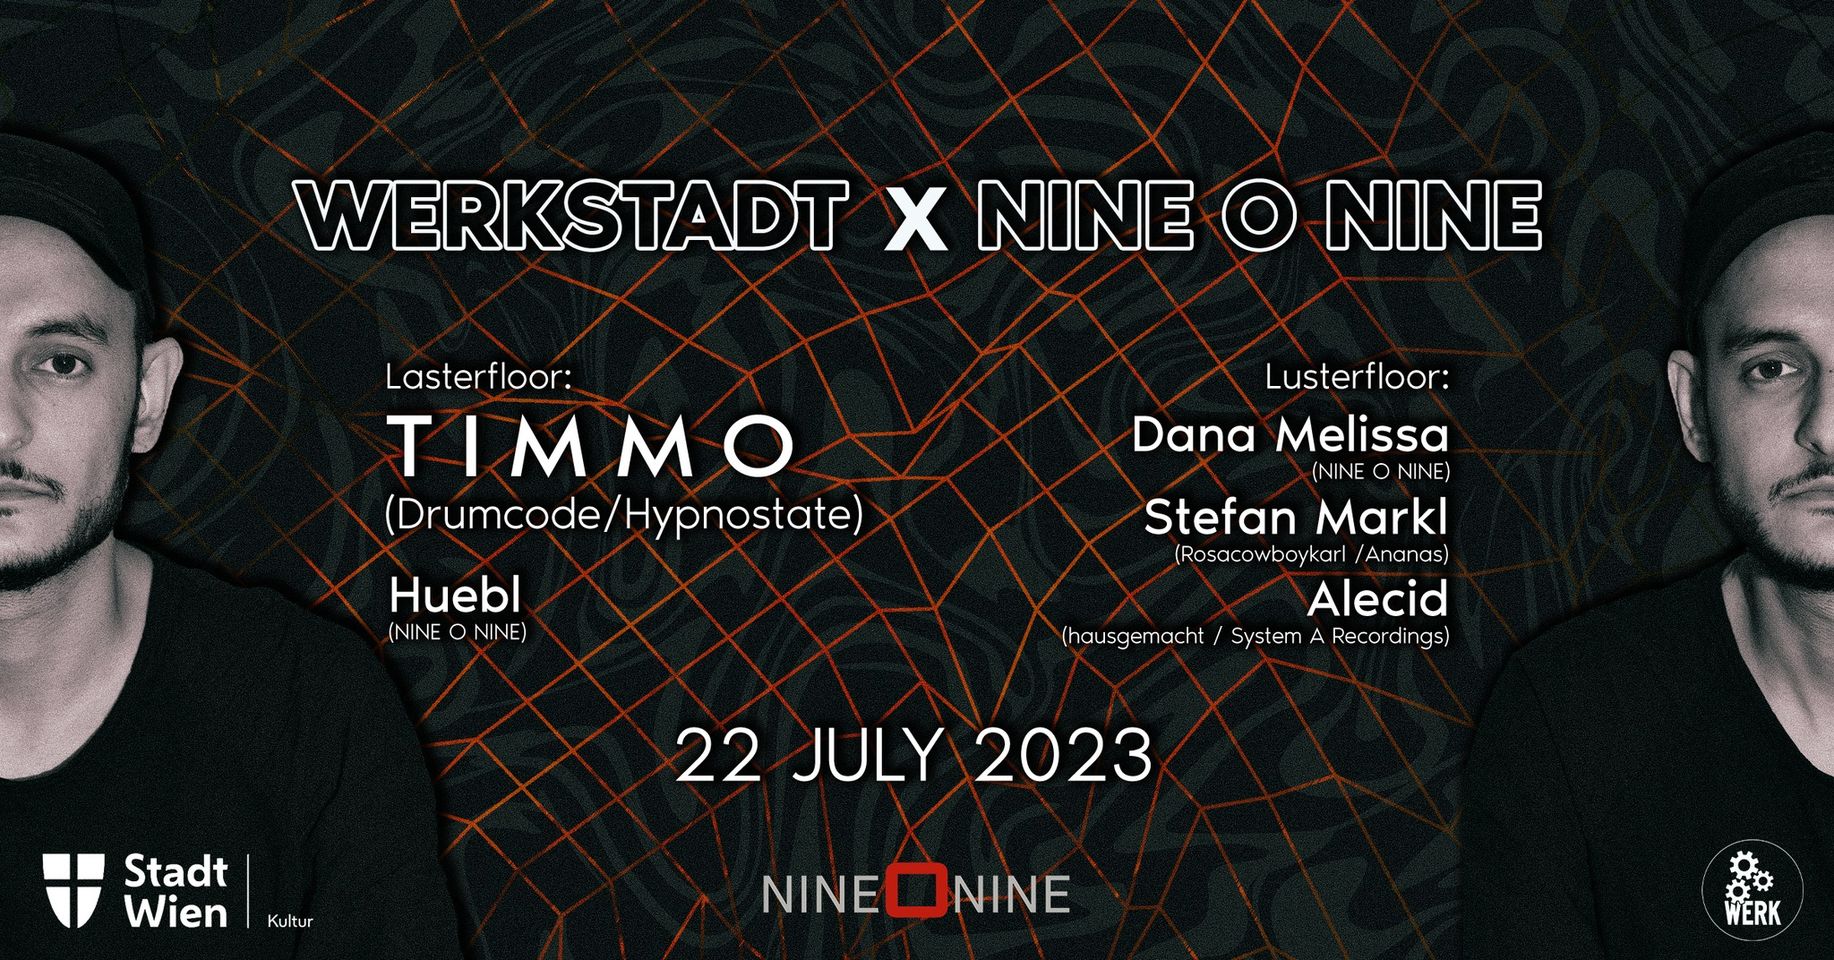 WerkStadt x NINE O NINE w/ Timmo (Drumcode/Hypnostate) am 22. July 2023 @ Das Werk.